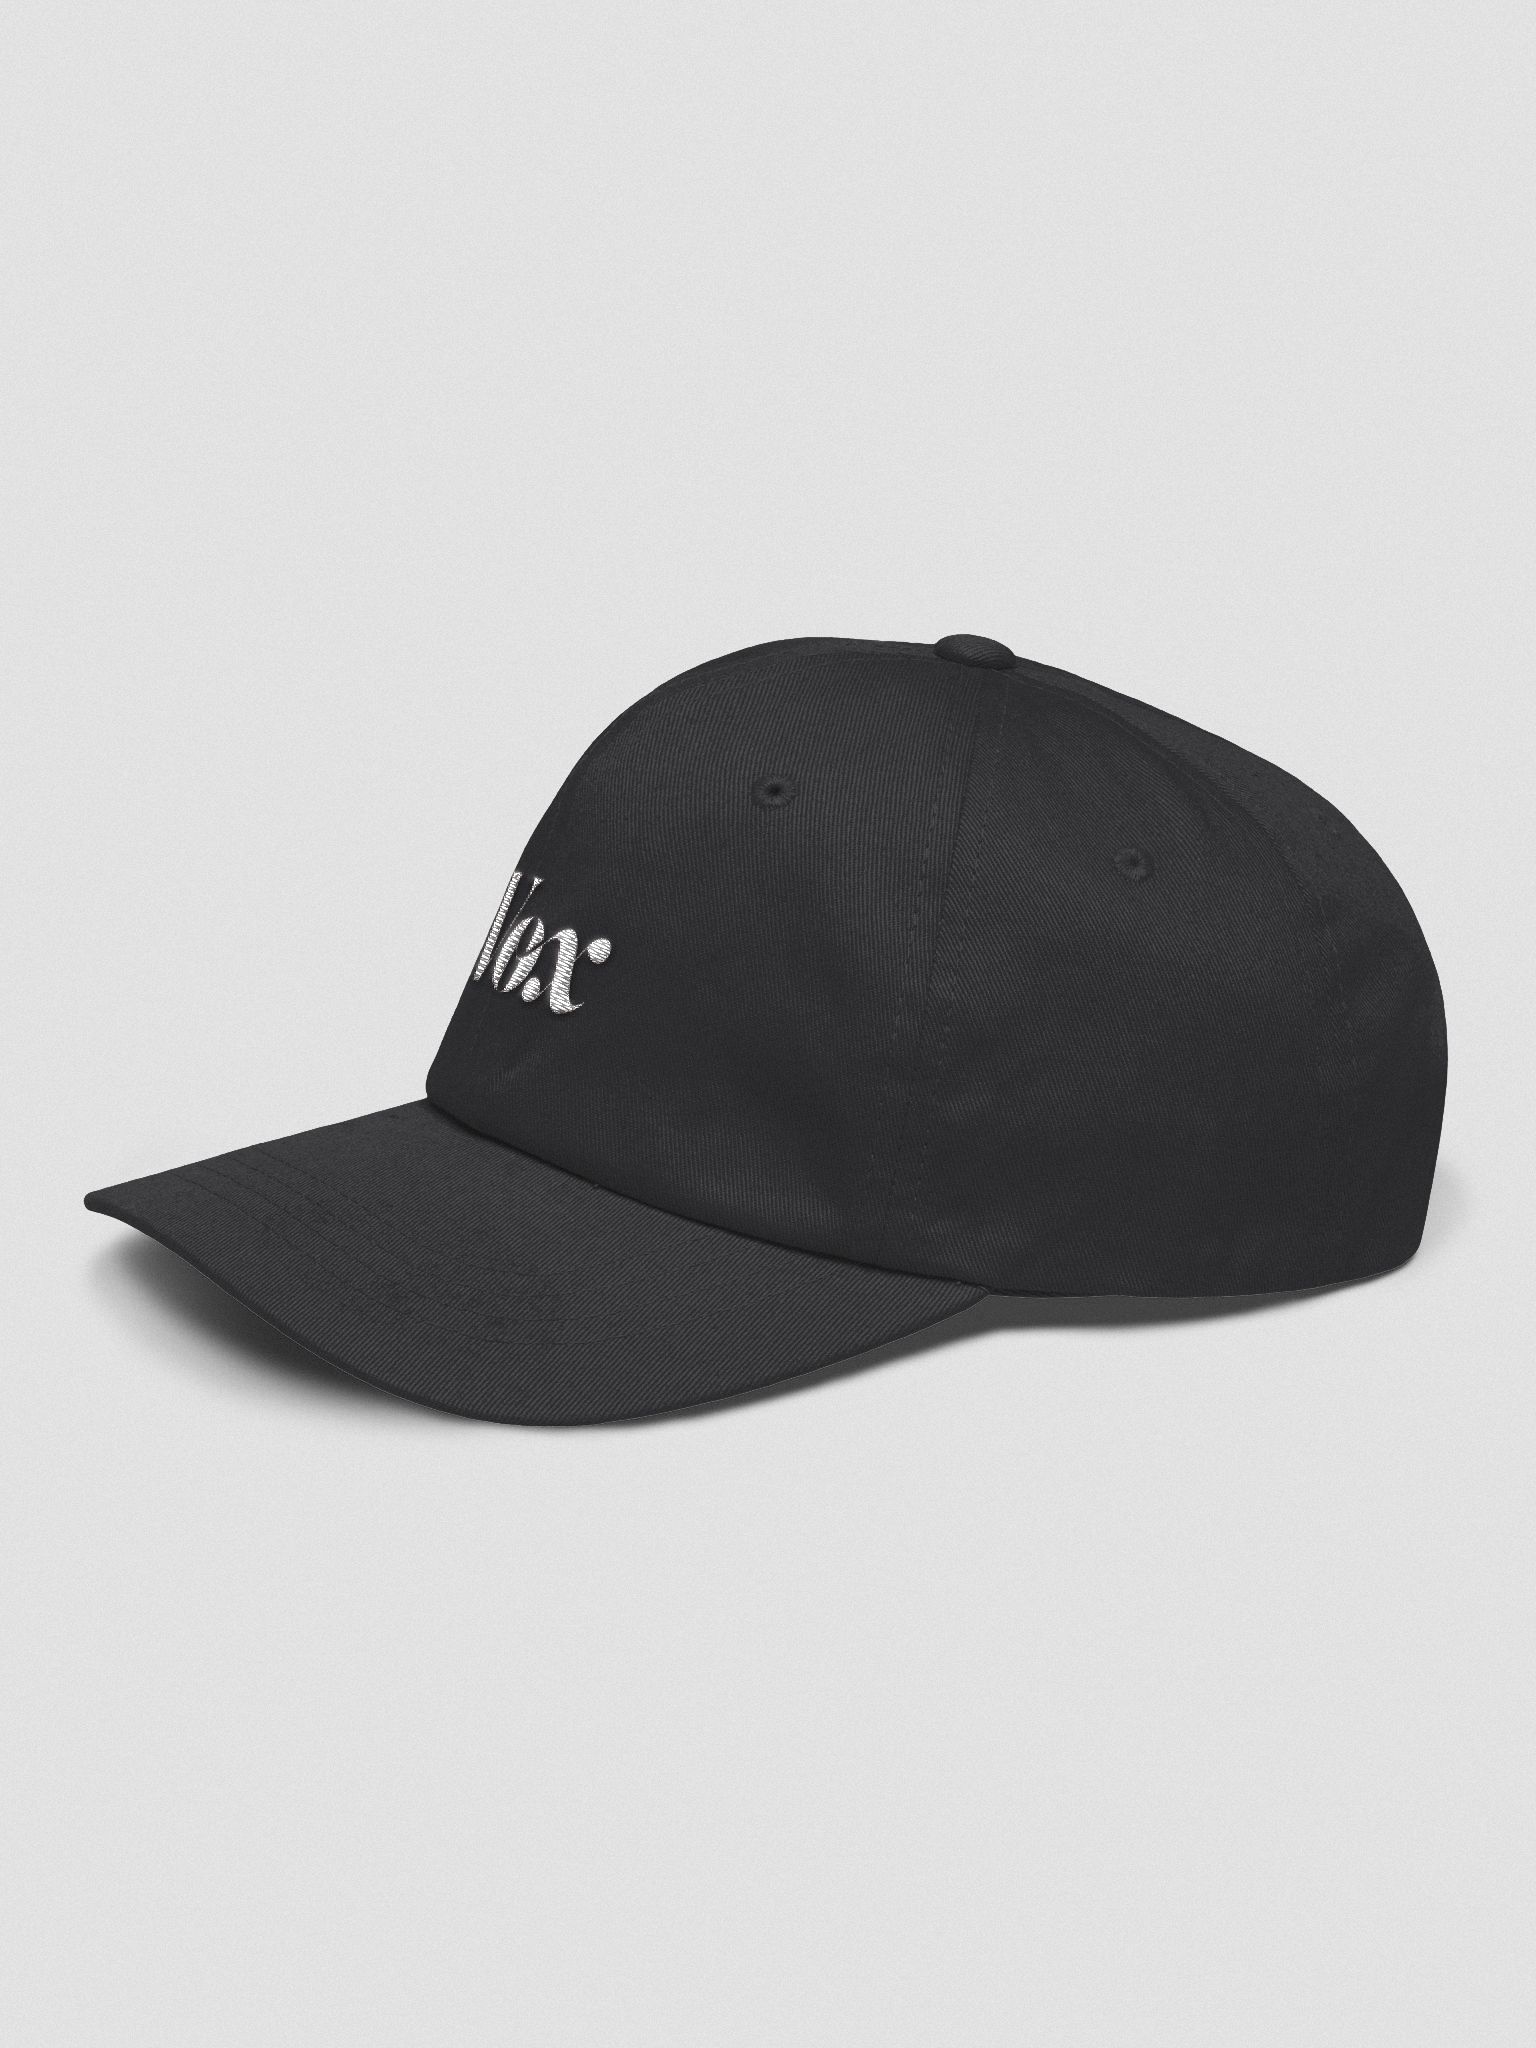 Vox Embroidered Dad Hat | Vox Dot Com